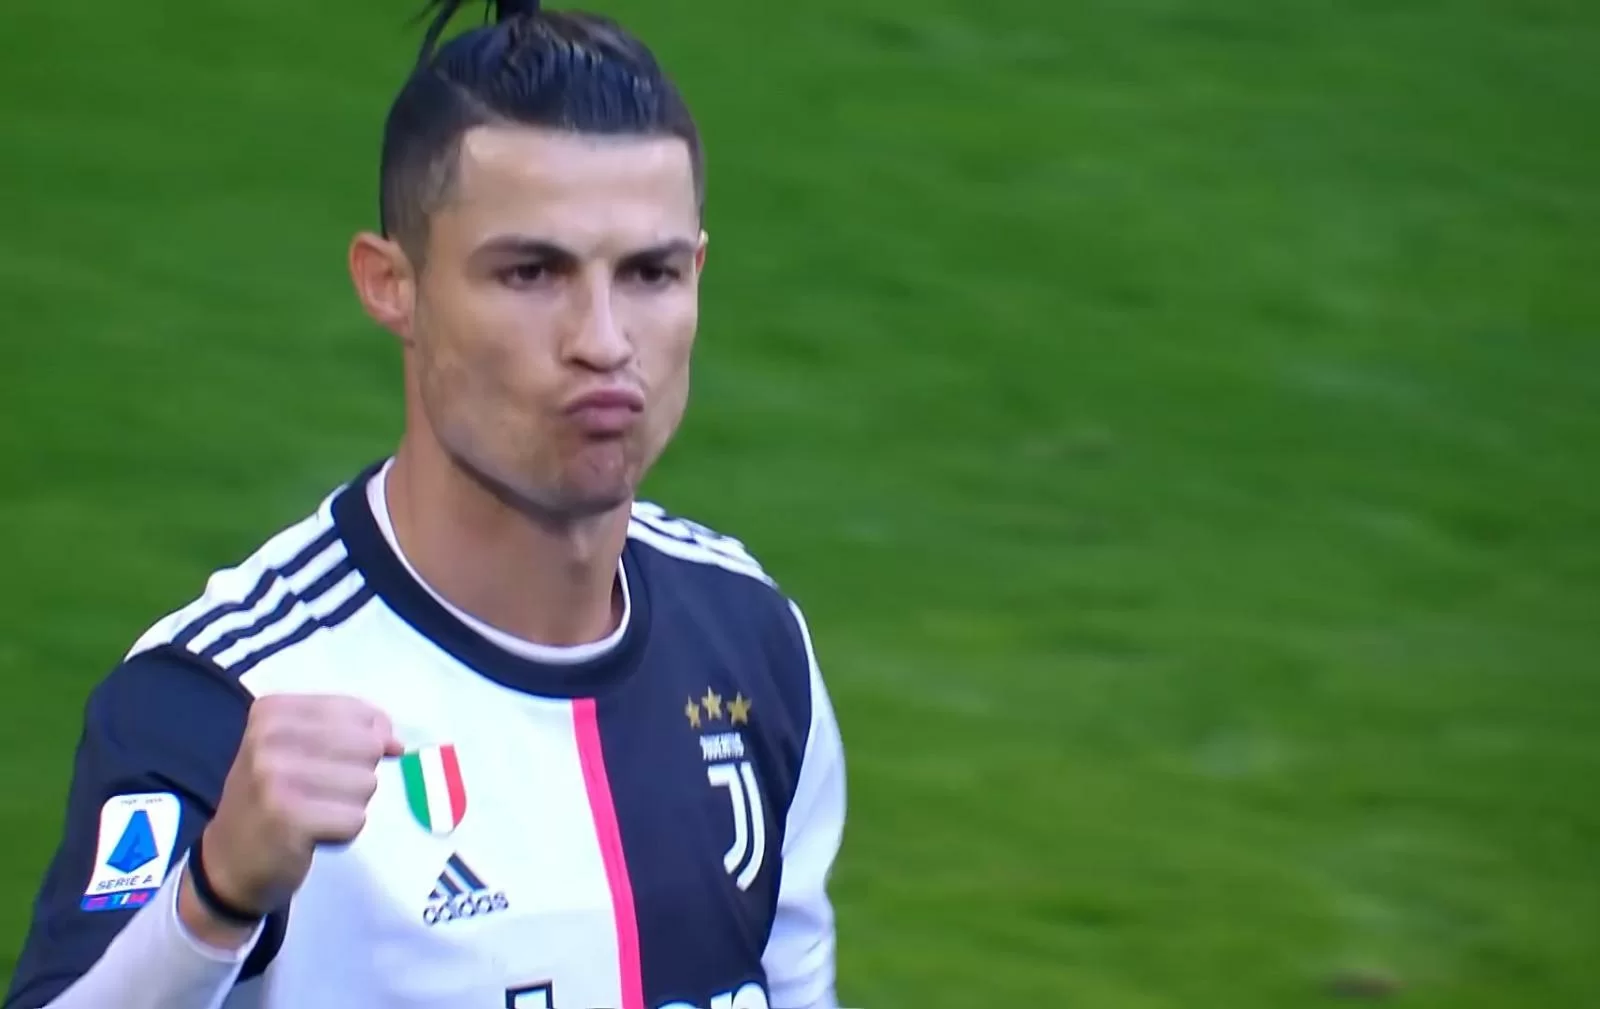 Addio in estate? Cristiano Ronaldo non ha dubbi: resterà alla Juventus